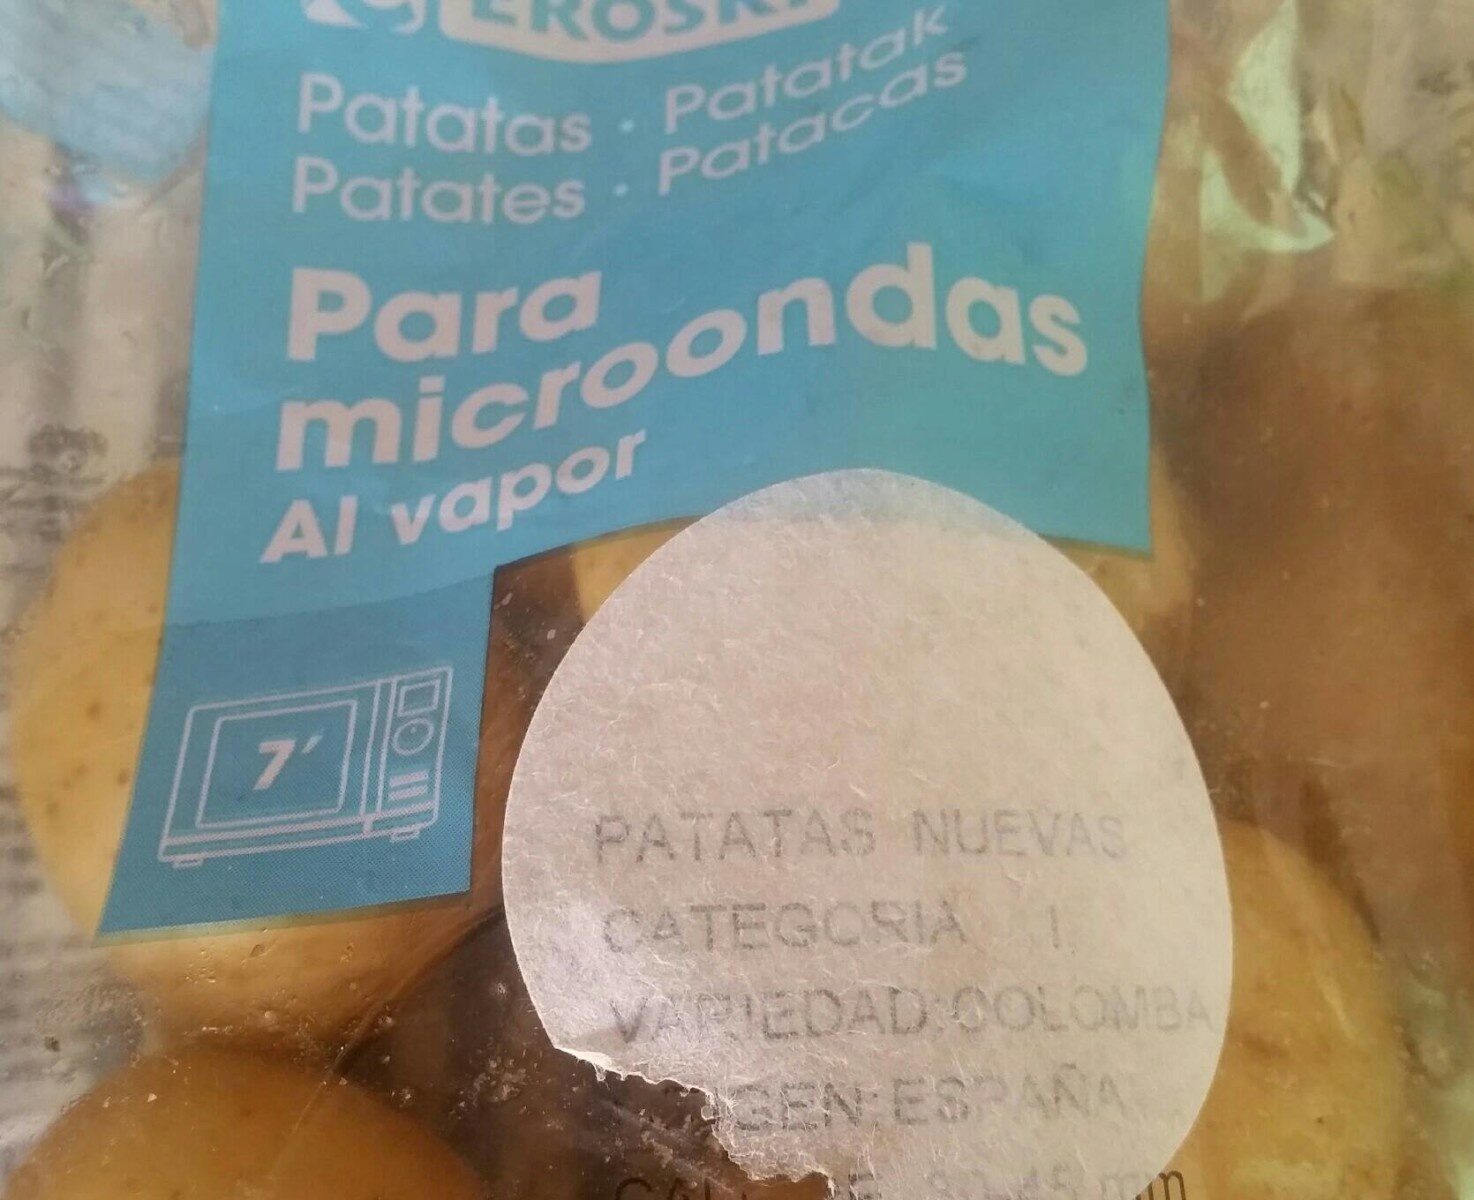 Patatas para el microondas al vapor - Producte - es